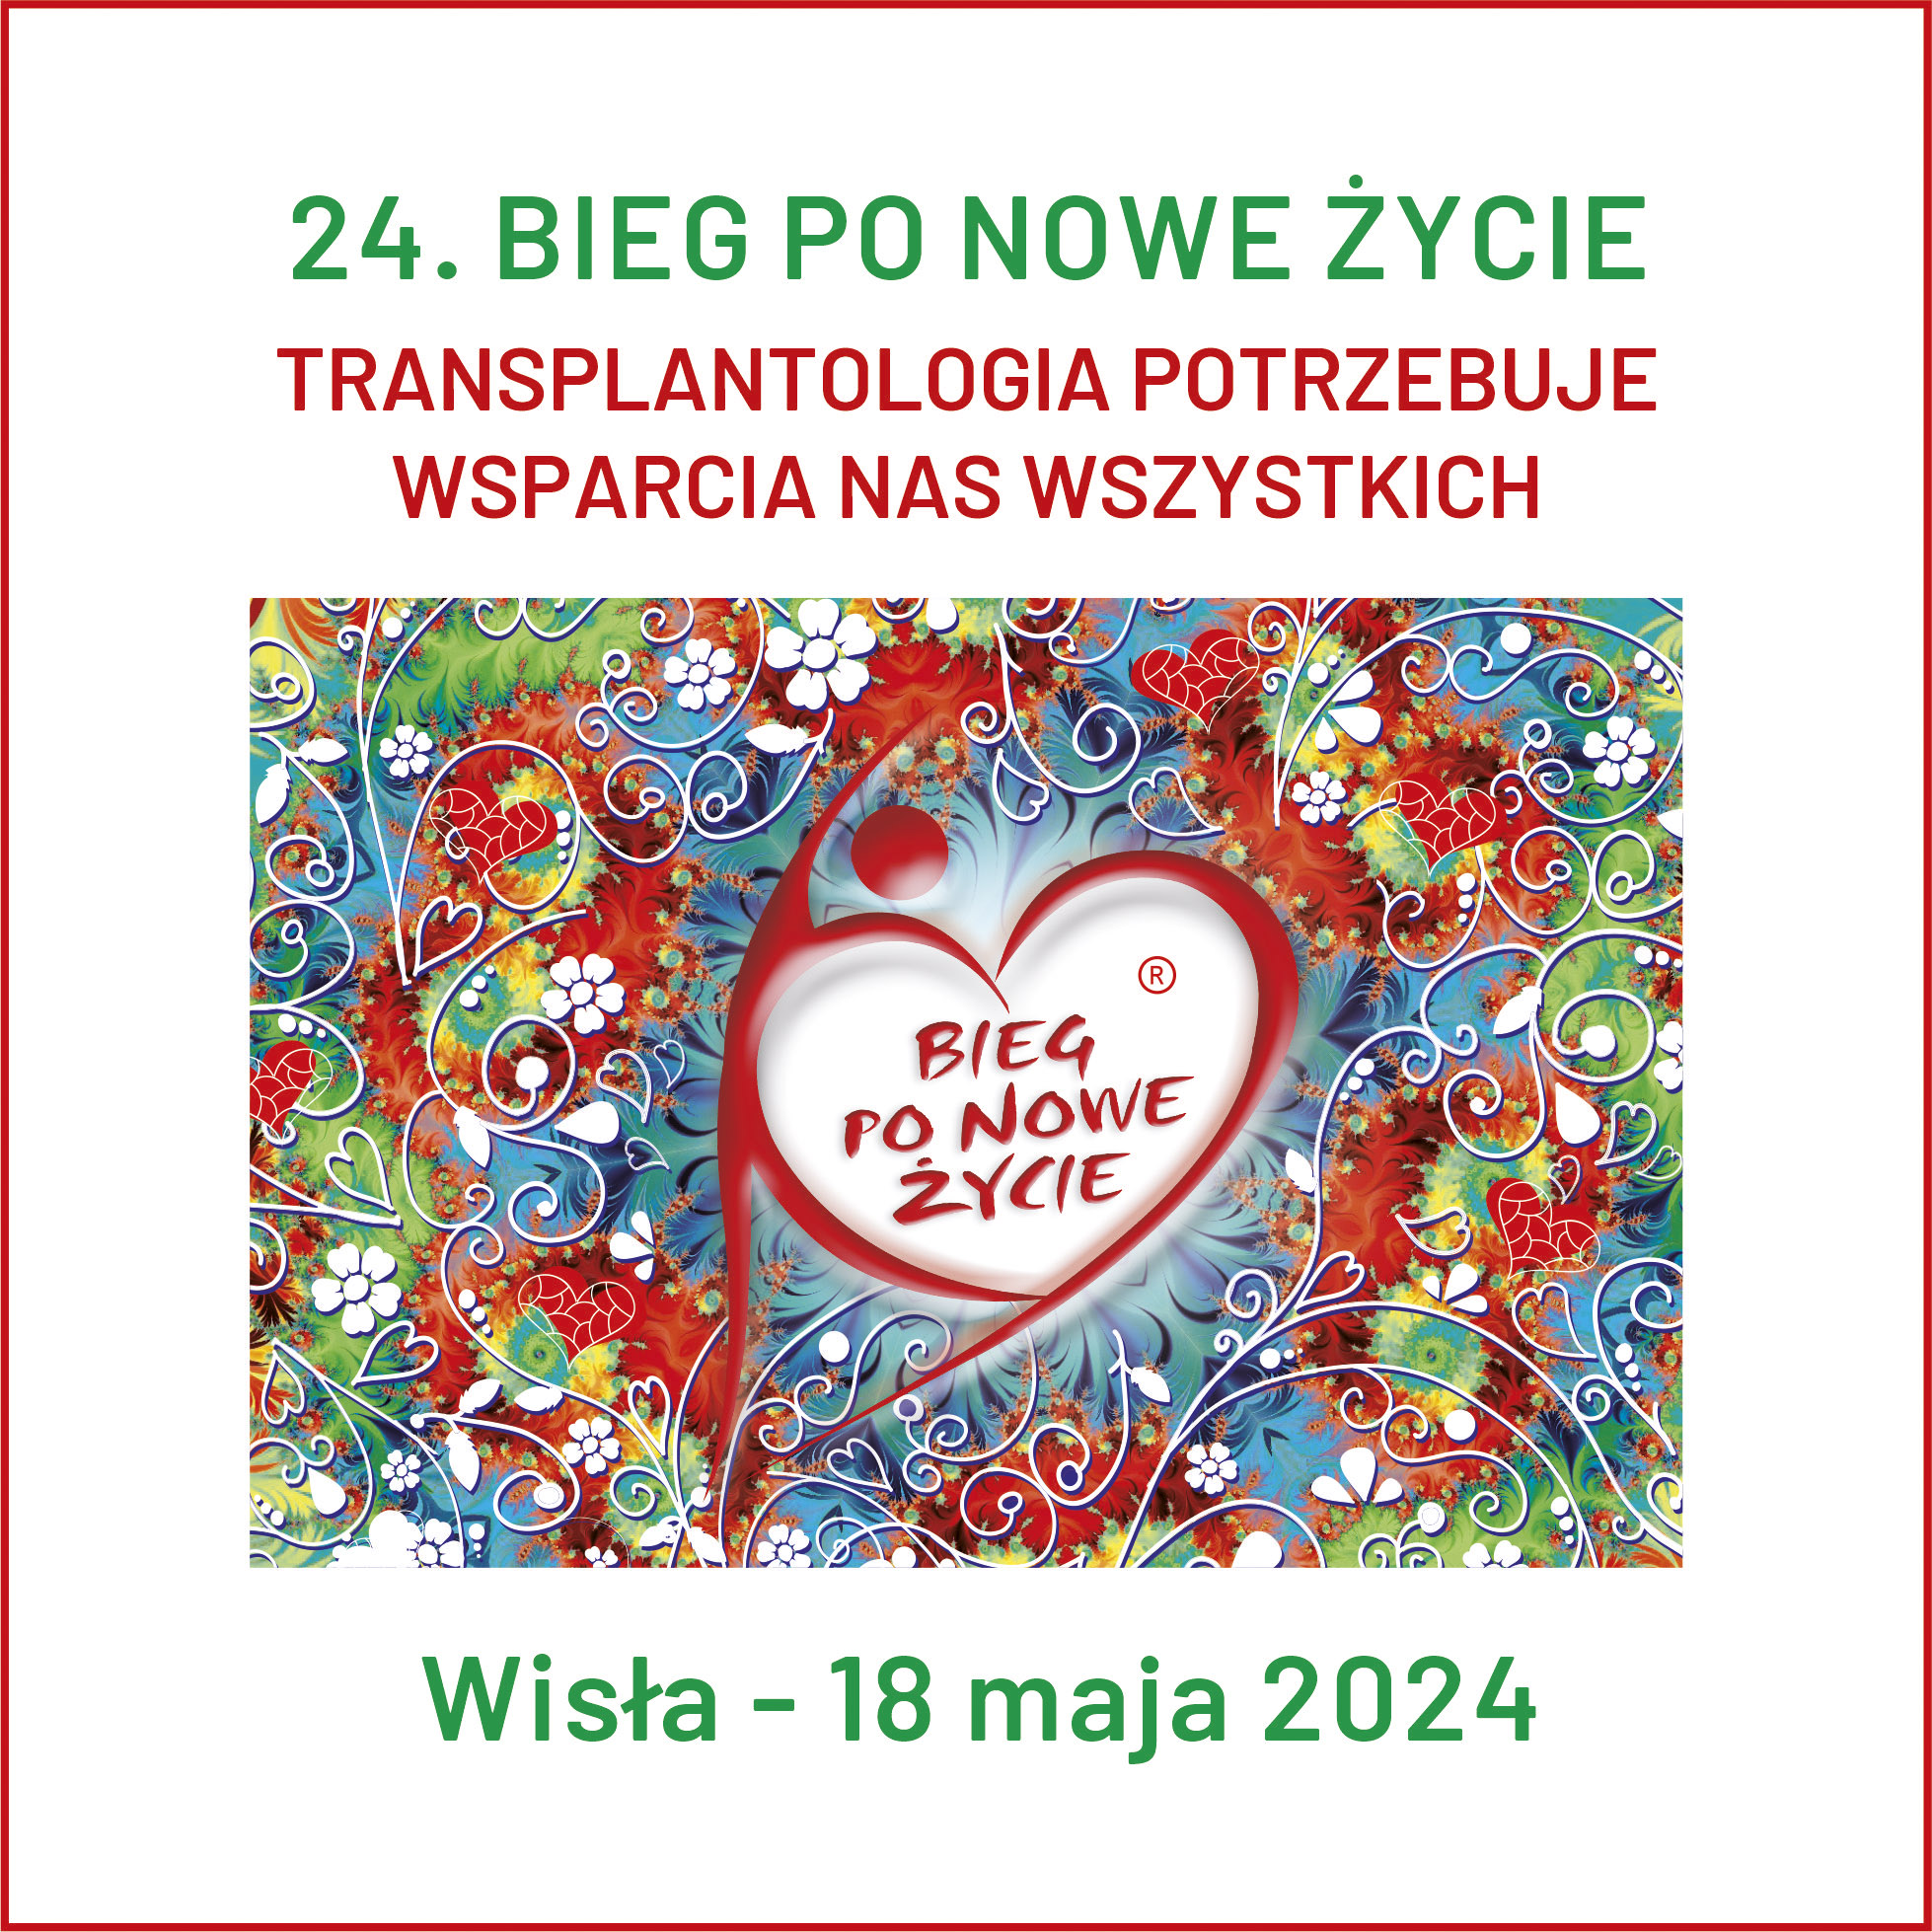 24. Bieg po Nowe Życie już 18 maja w Wiśle!